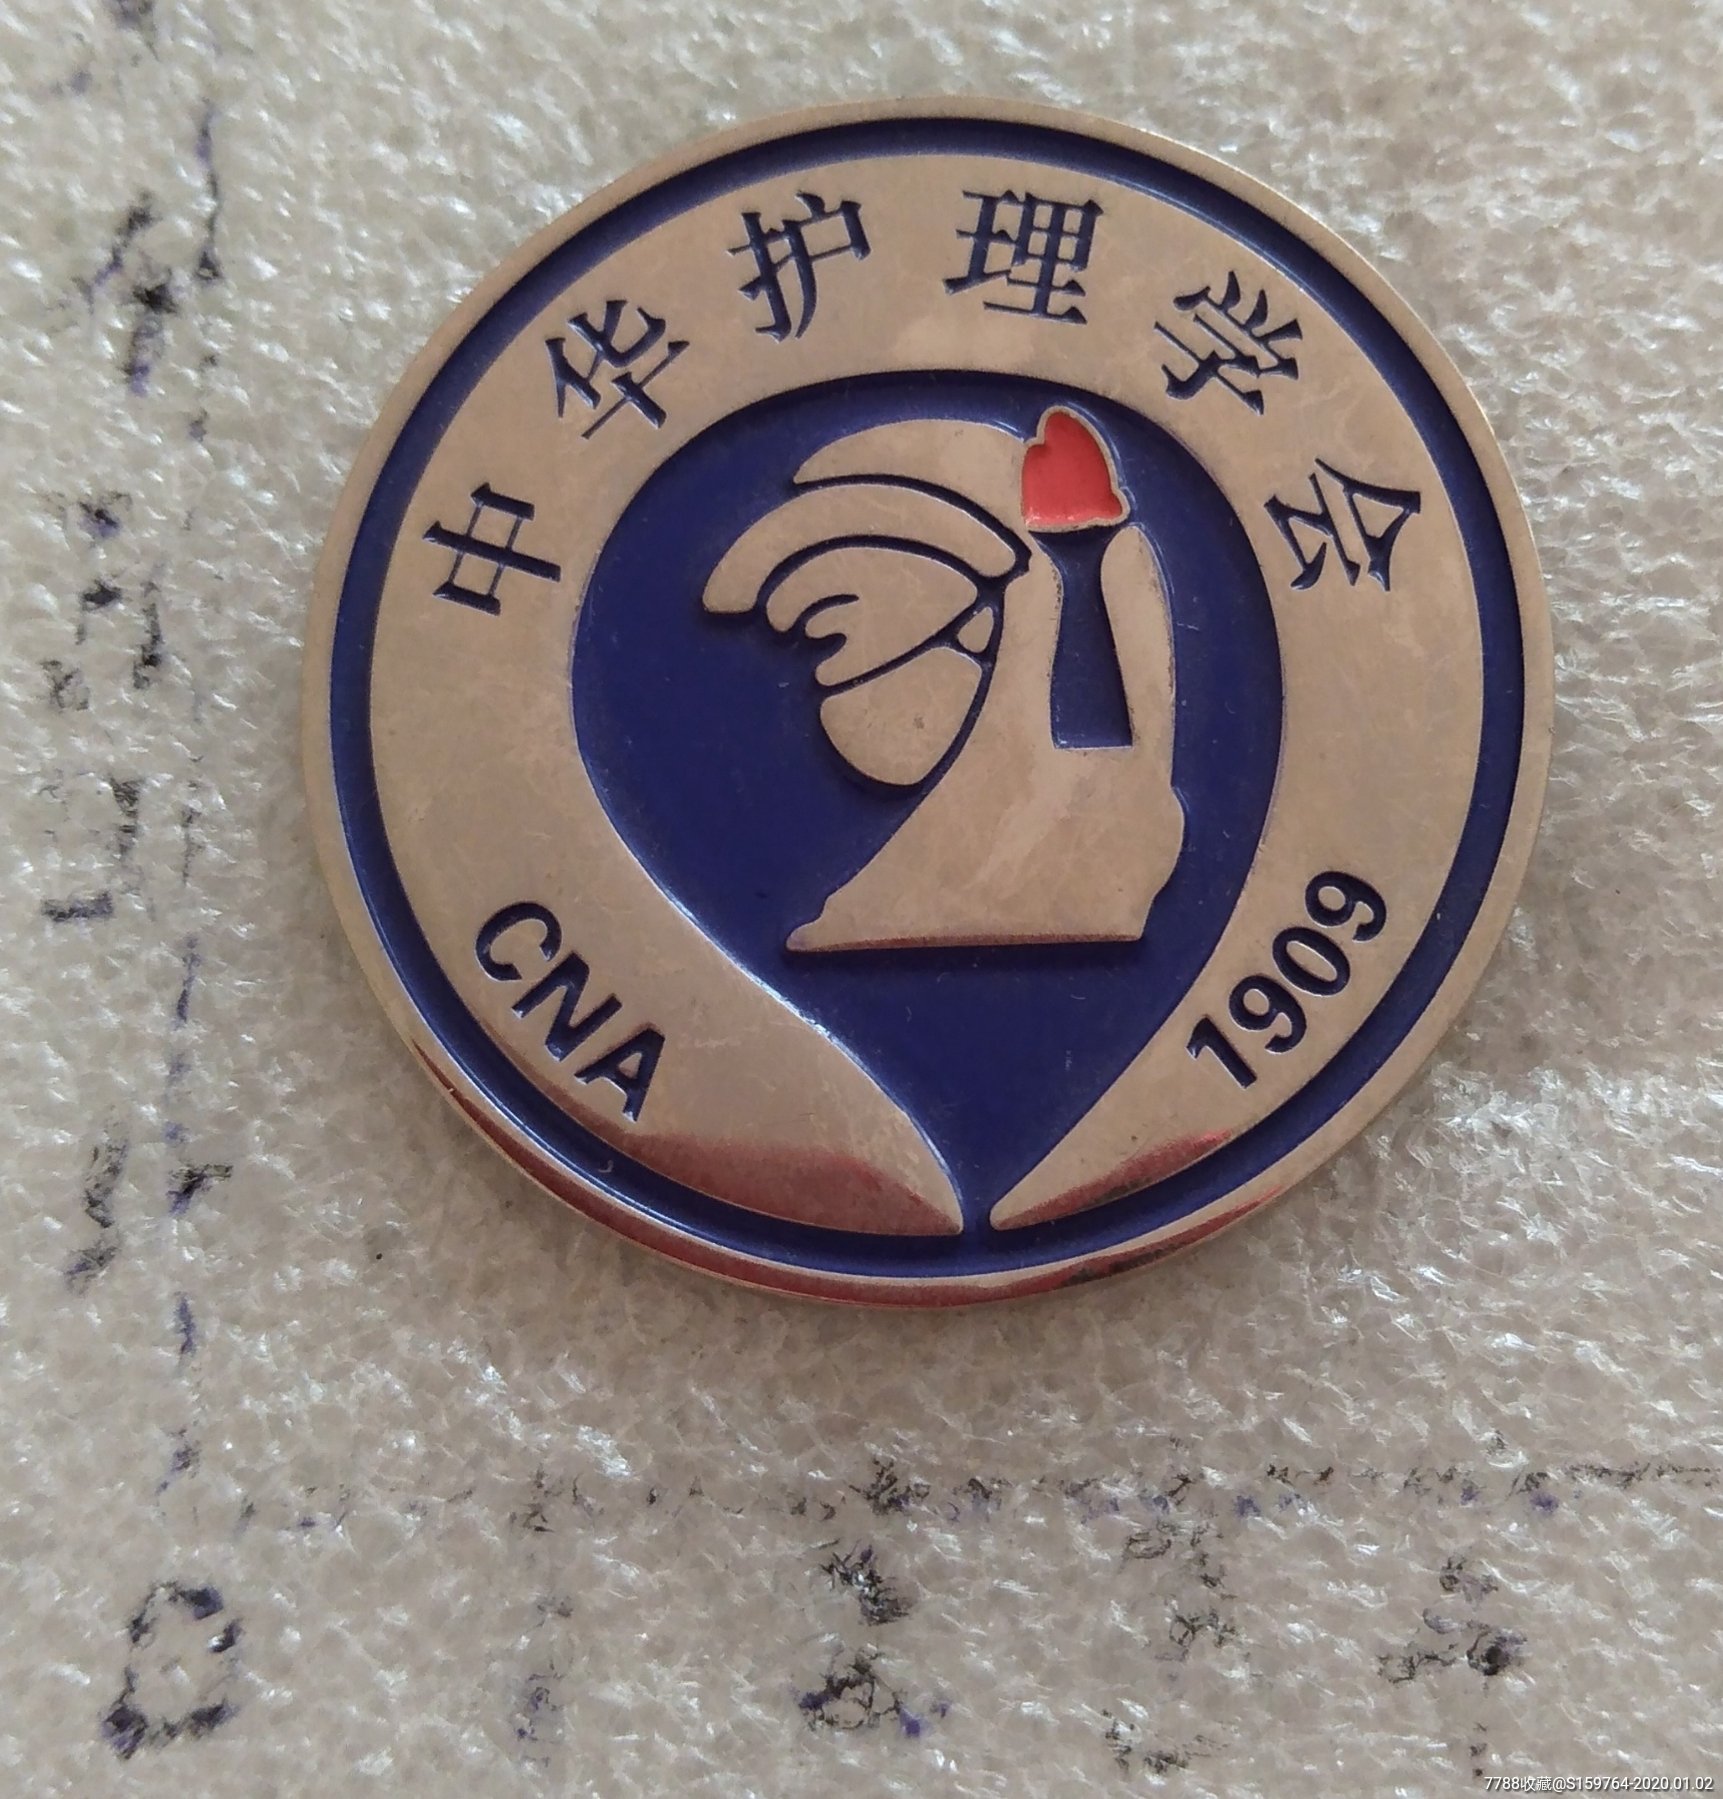 中华护理学会logo图片